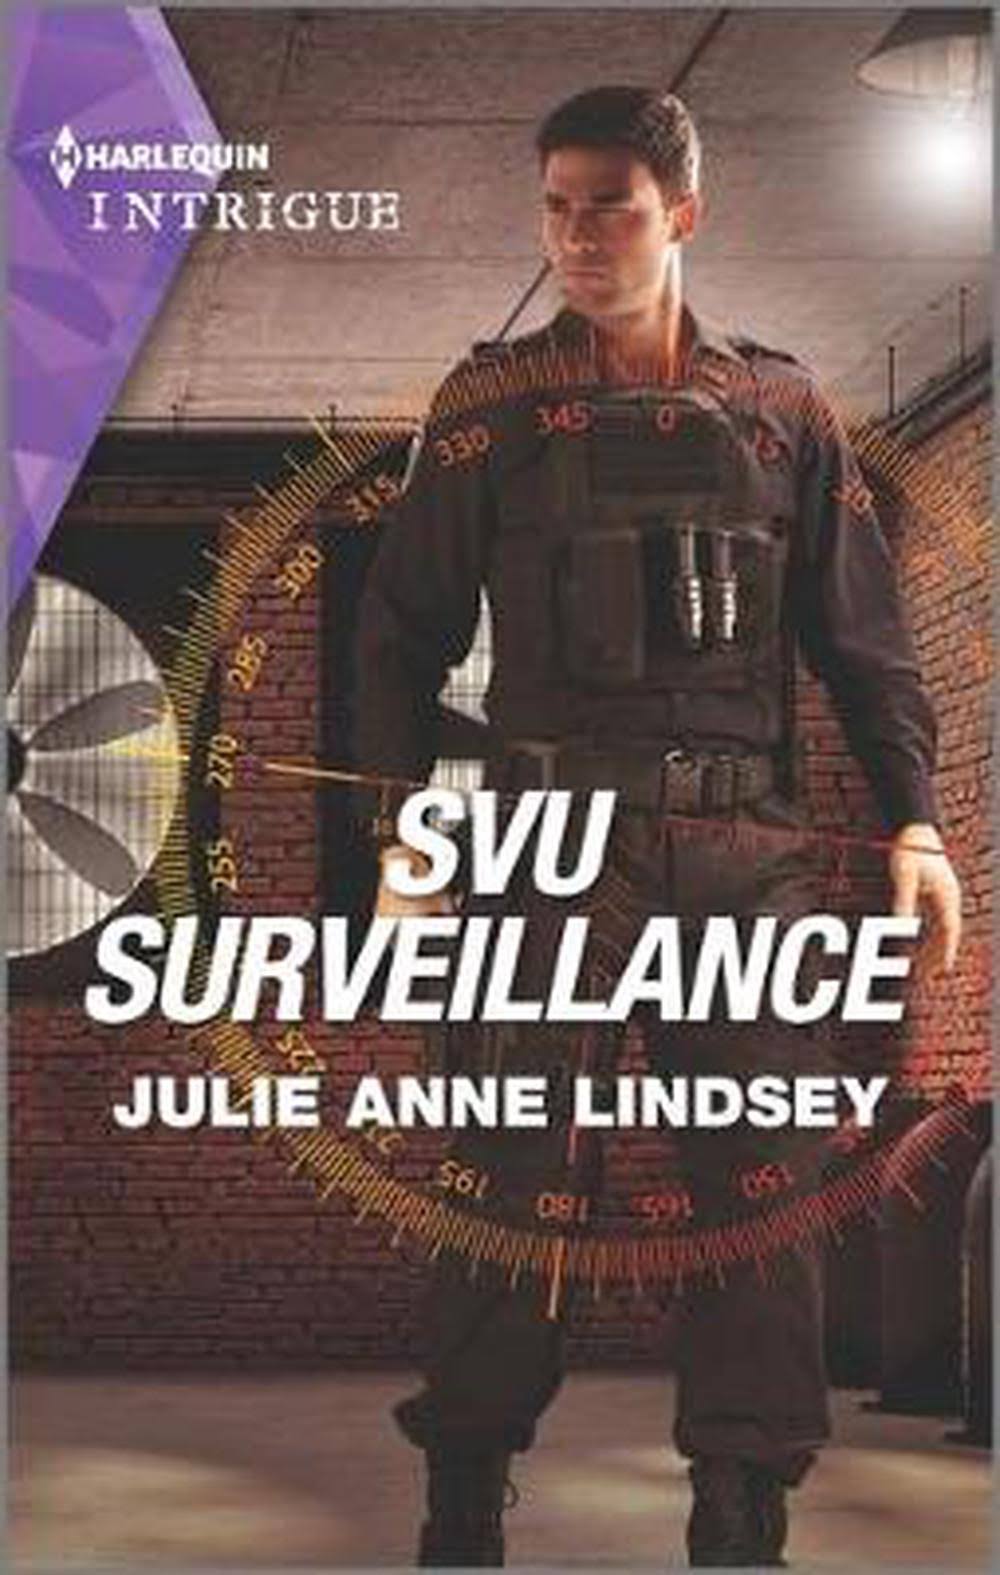 Svu Surveillance by Julie Anne Lindsey